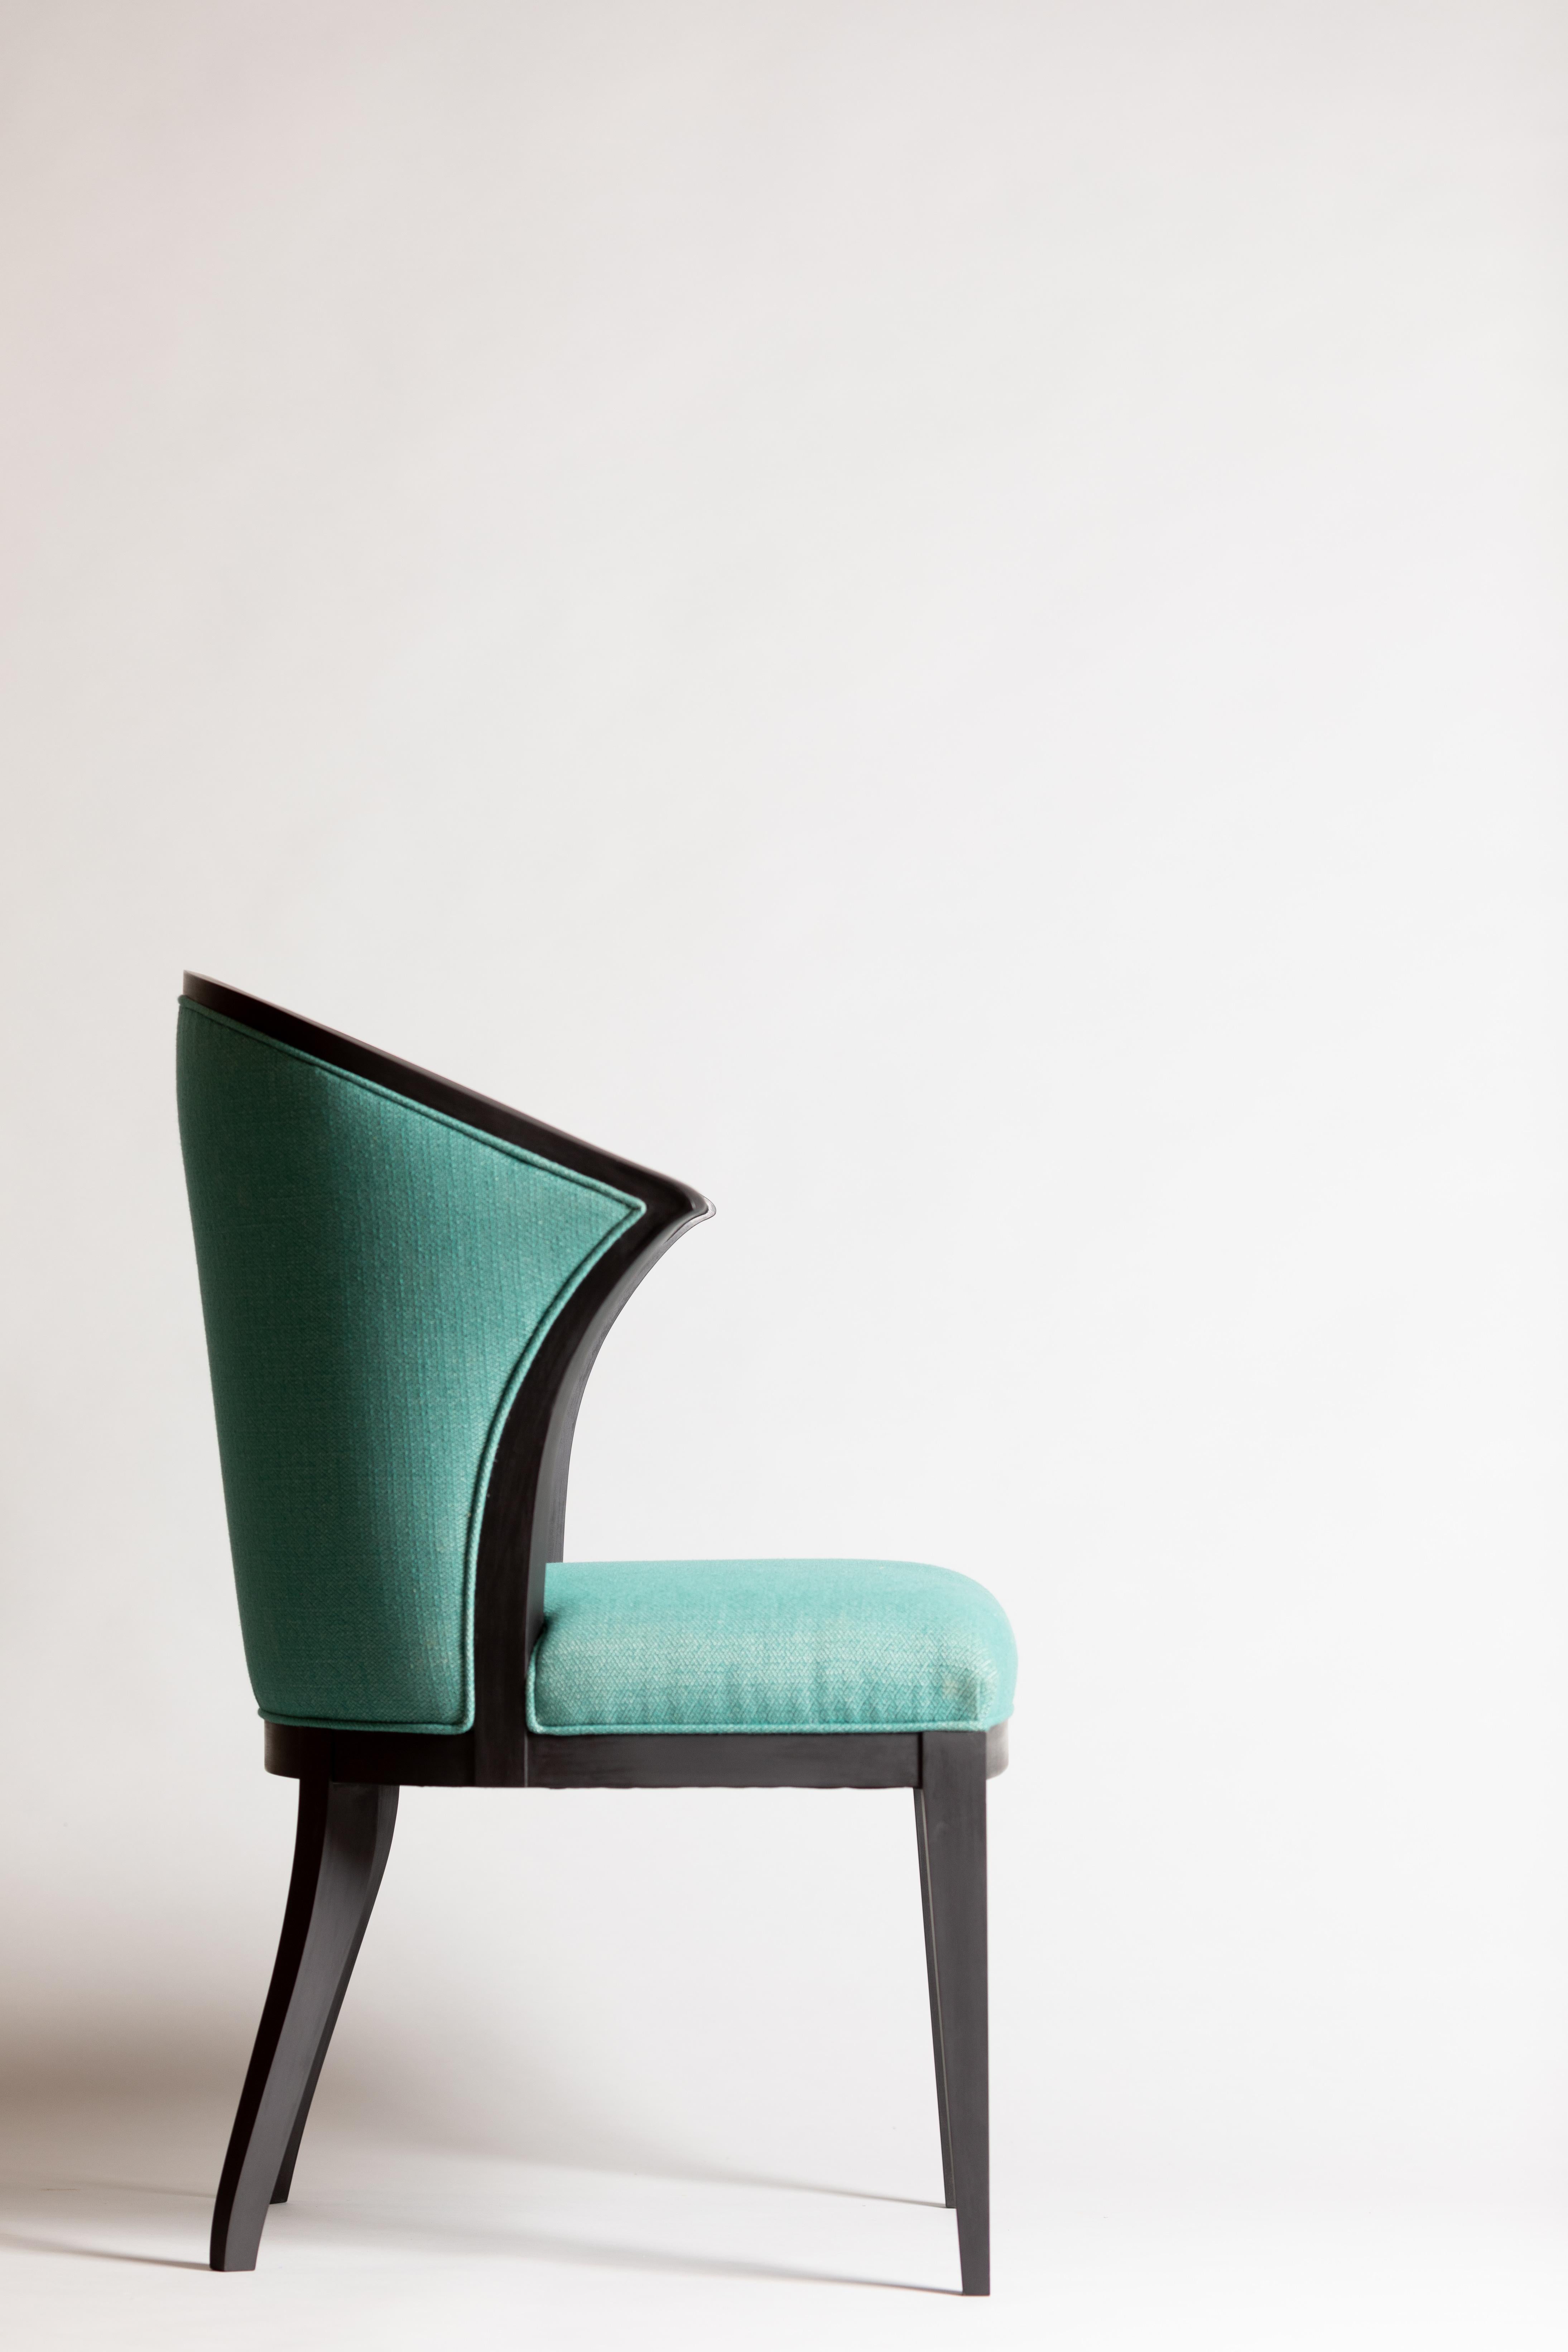 Contemporaine avec un clin d'œil à la tradition, cette chaise est robuste et classique. Les accoudoirs s'arrêtent avant l'avant de la chaise, ce qui la rend suffisamment confortable pour faire partie d'un salon, mais aussi pratique comme chaise de